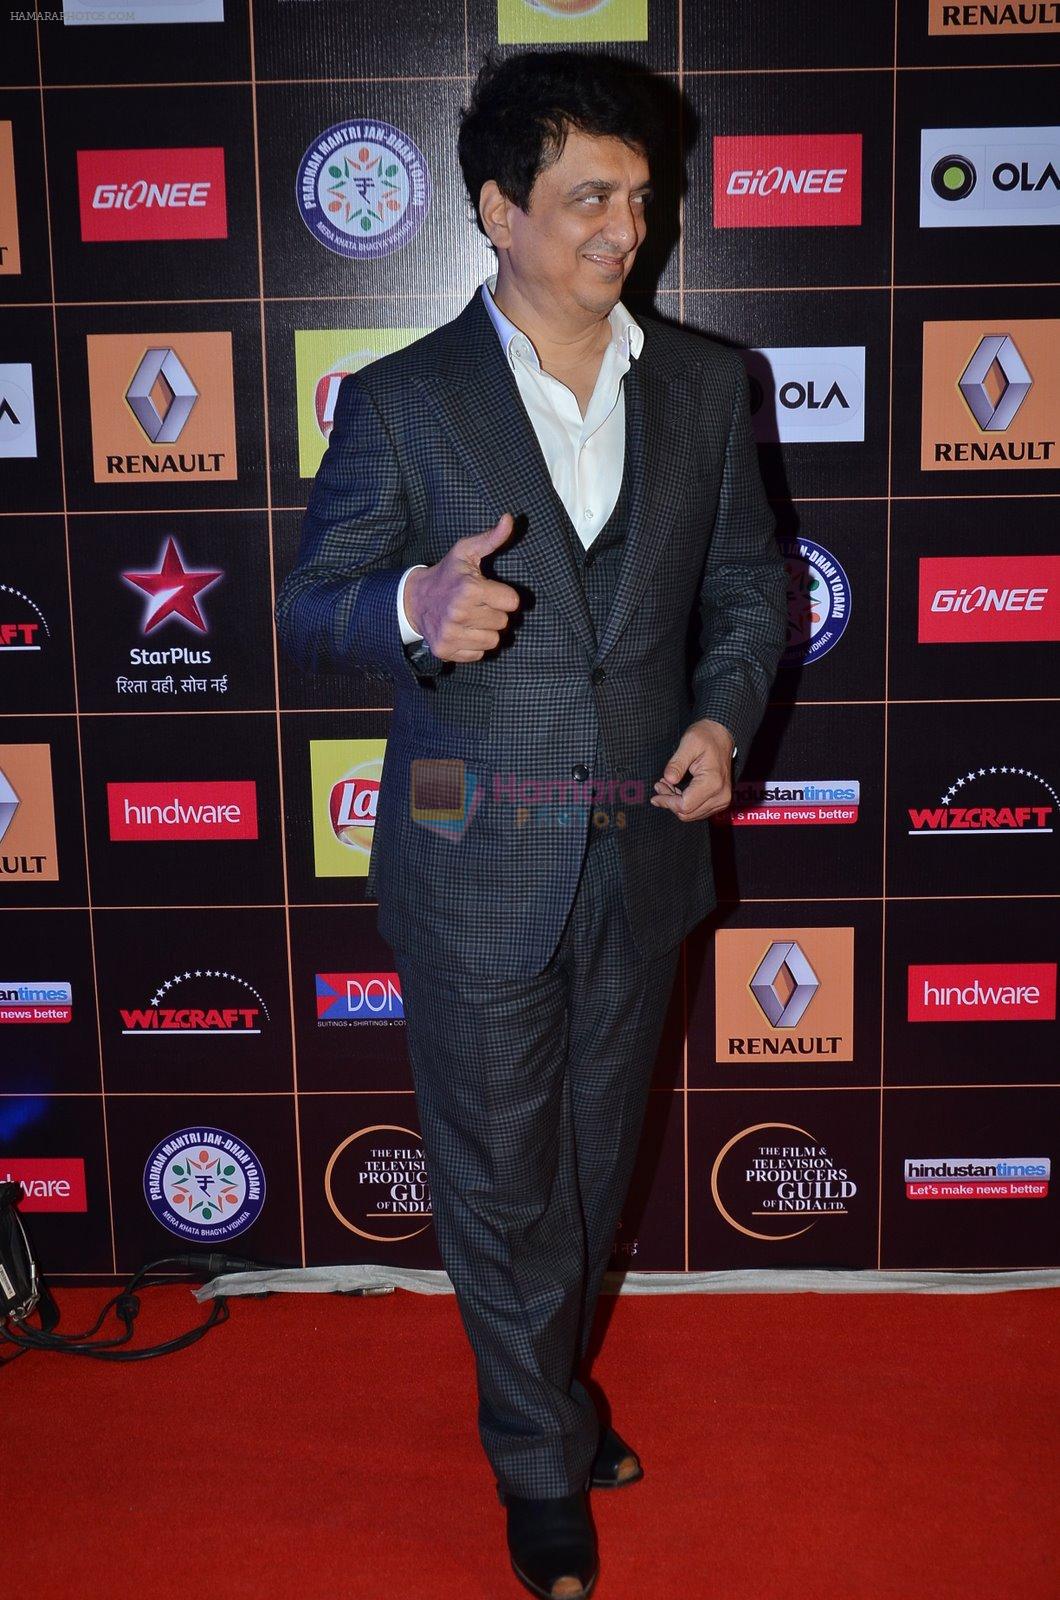 Sajid Nadiadwala at Producers Guild Awards 2015 in Mumbai on 11th Jan 2015